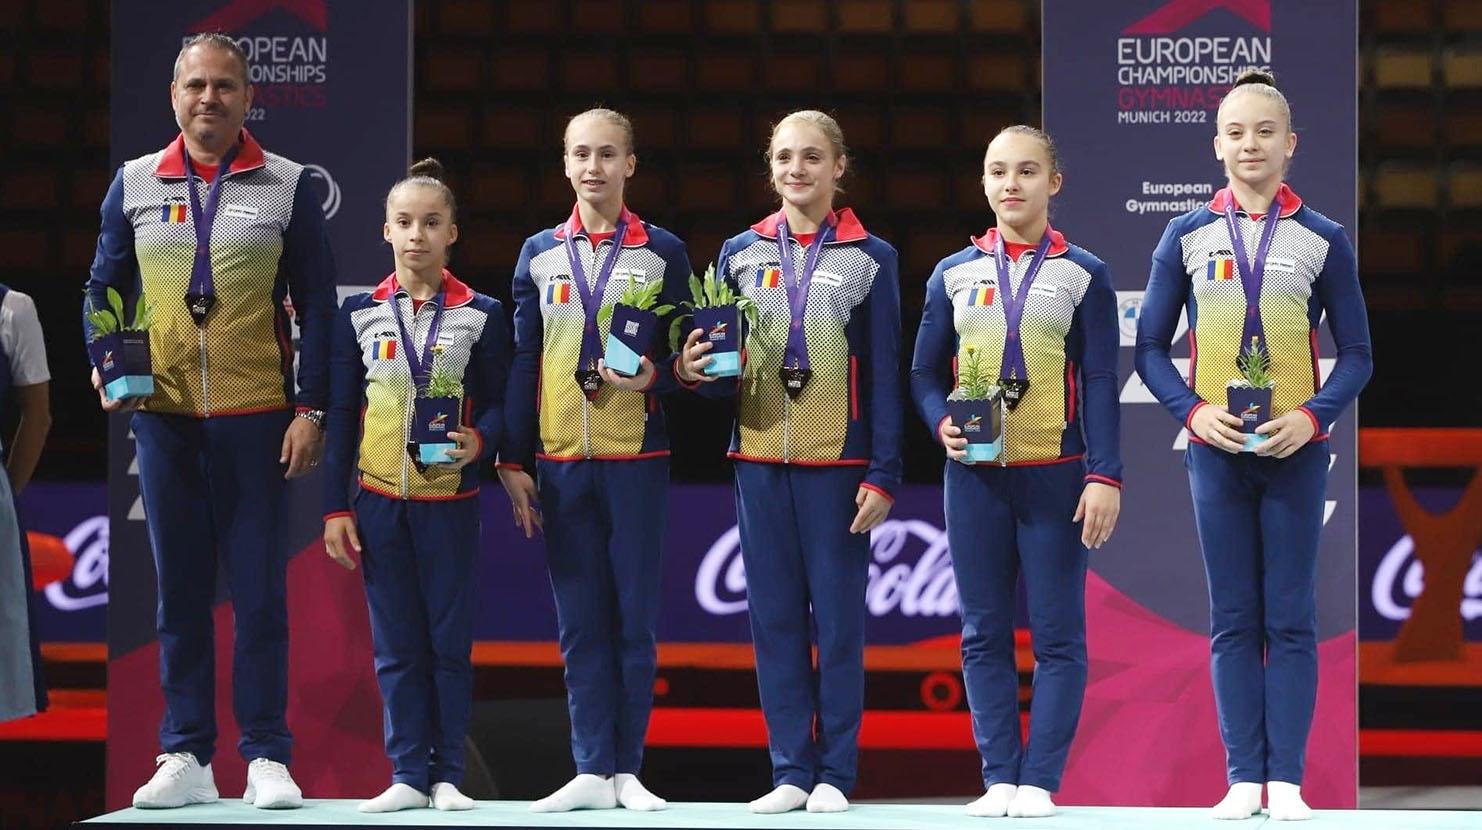 Amalia Puflea, Amalia Ghigoarţă, Sabrina Voinea, Crina Tudor şi Miruna Botez au totalizat 150,495 p în concursul pe echipe, iar Ghigoarţă a adunat 51,432 p la individual compus